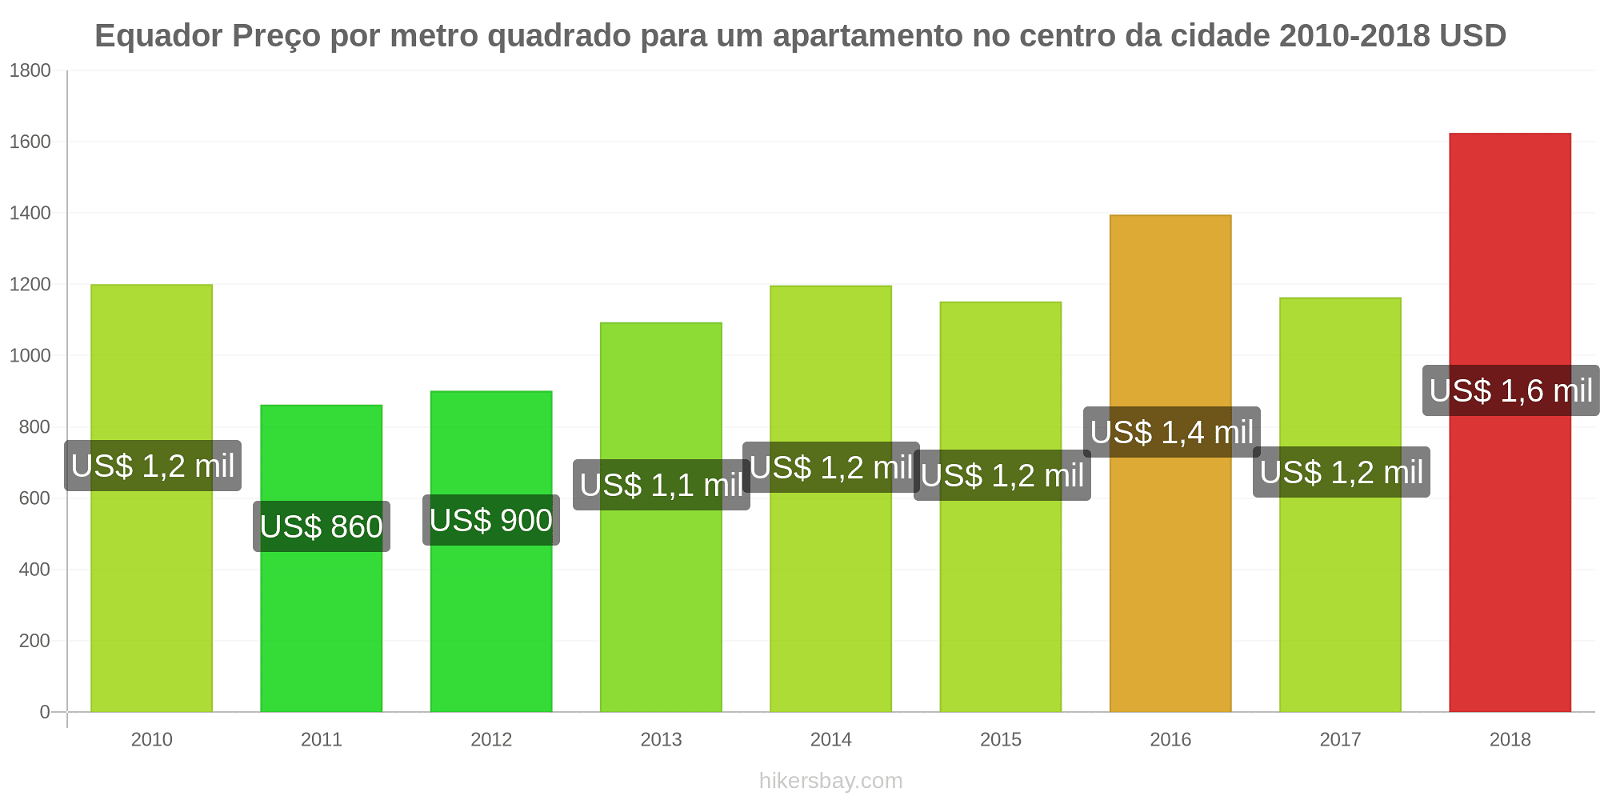 Equador mudanças de preços Preço por metro quadrado de um apartamento no centro da cidade hikersbay.com